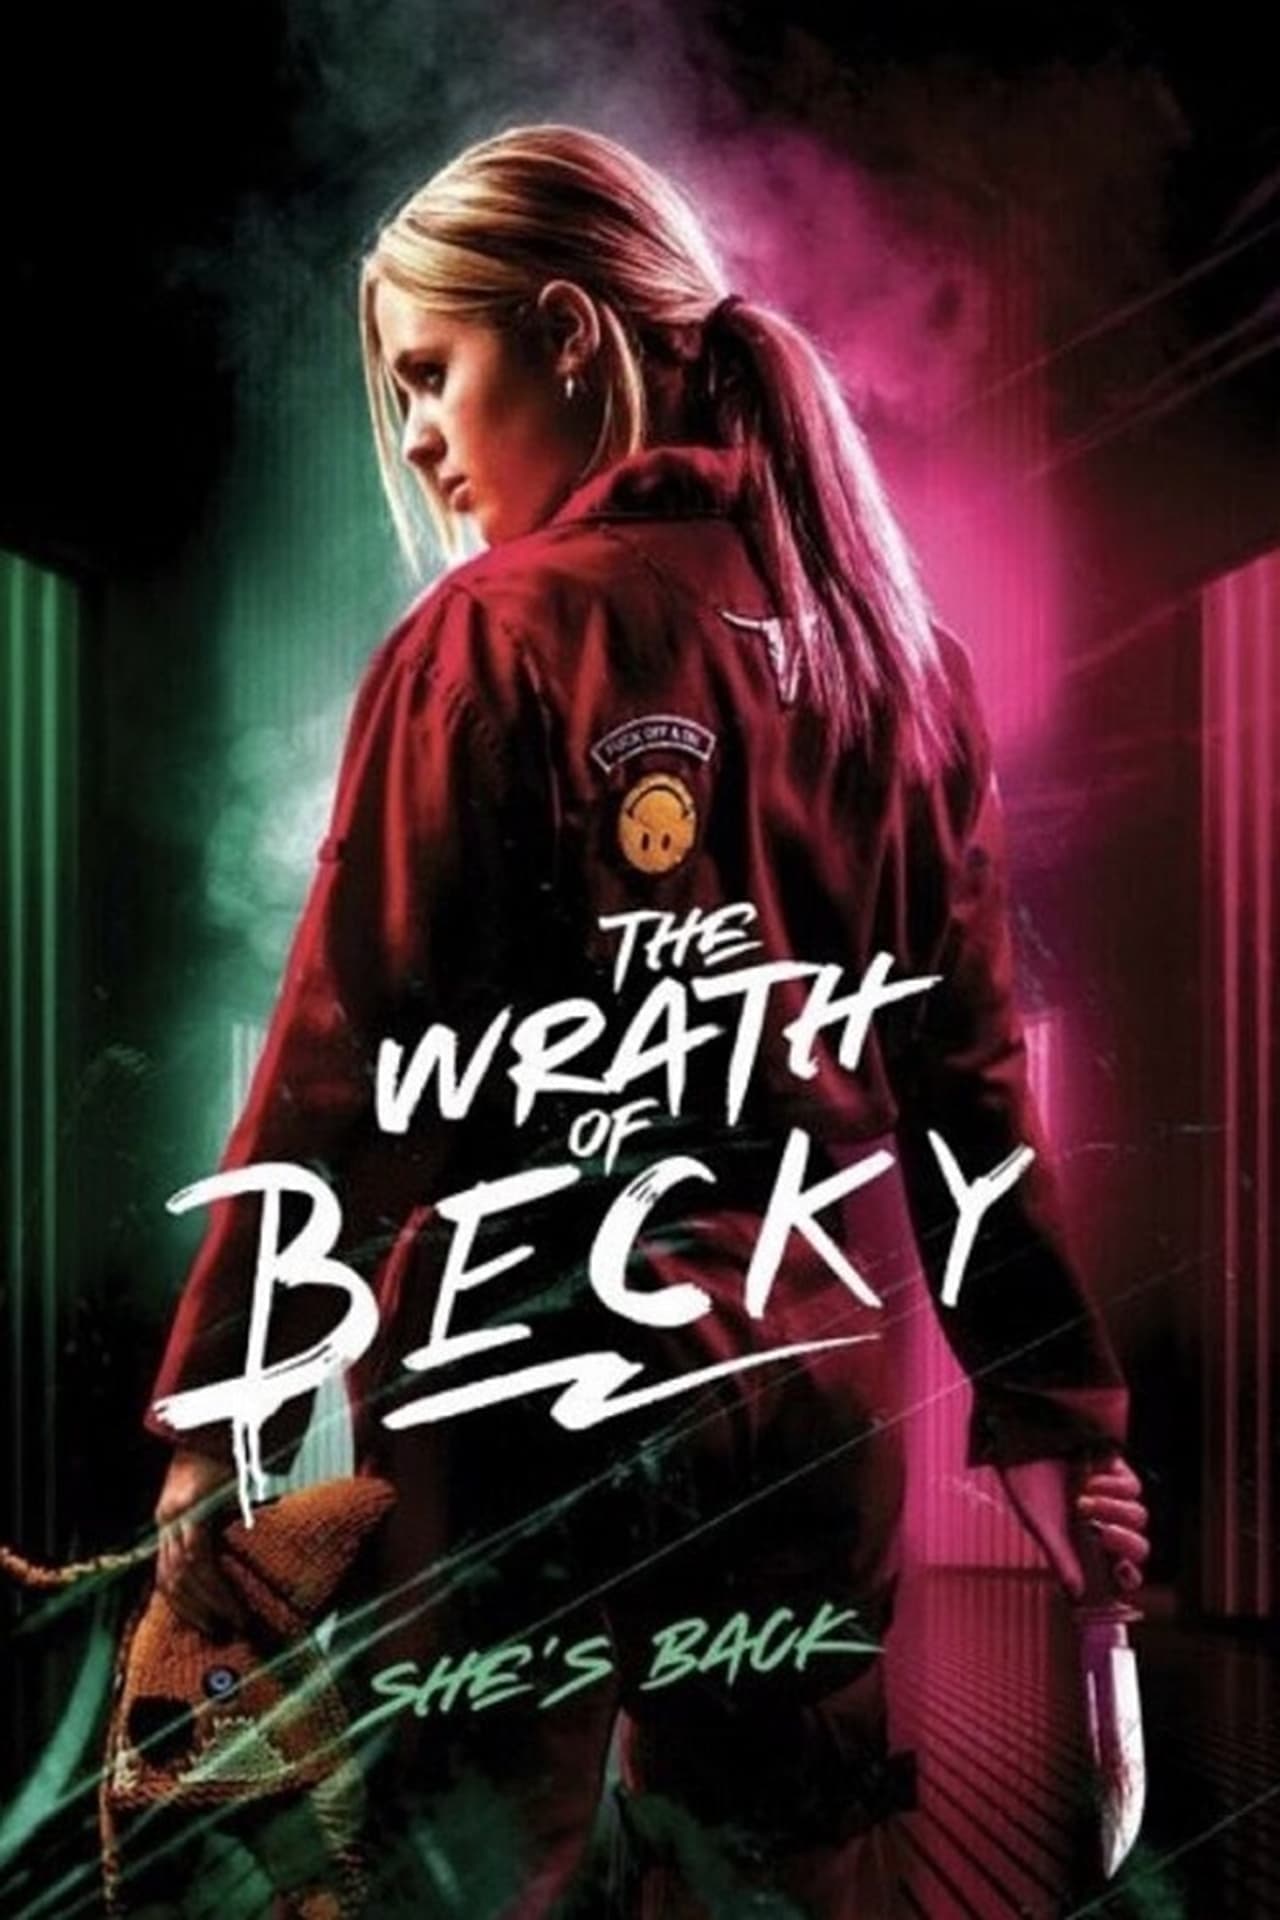 دانلود صوت دوبله فیلم The Wrath of Becky